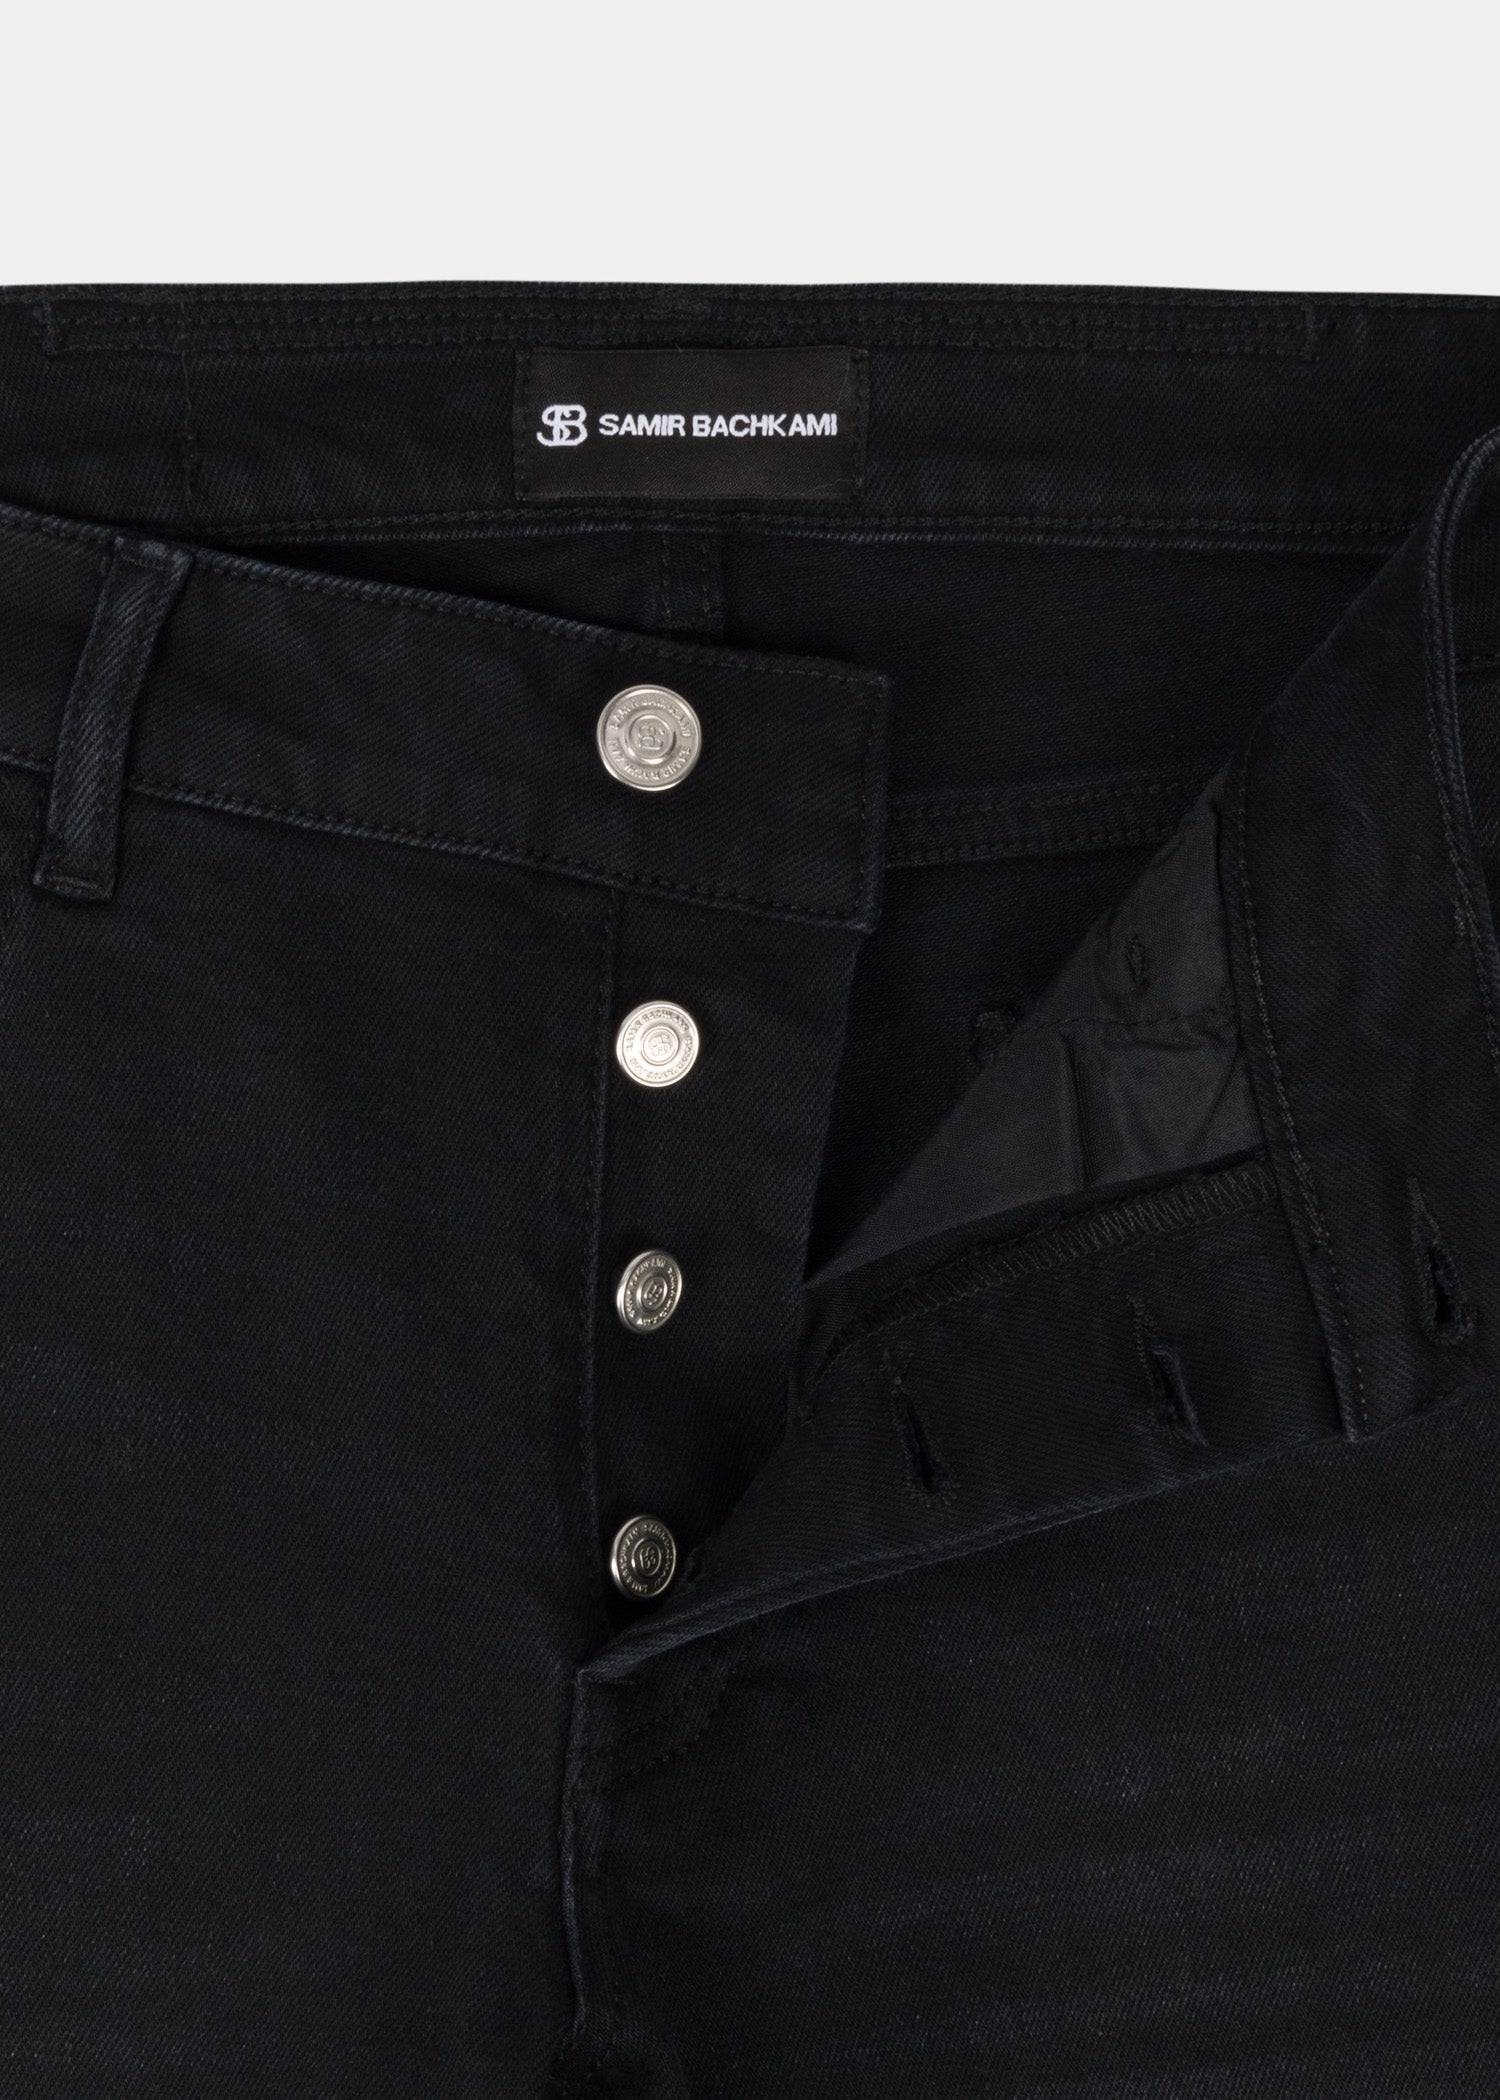 Black Distressed Slim Fit Jeans - Samir Bachkami